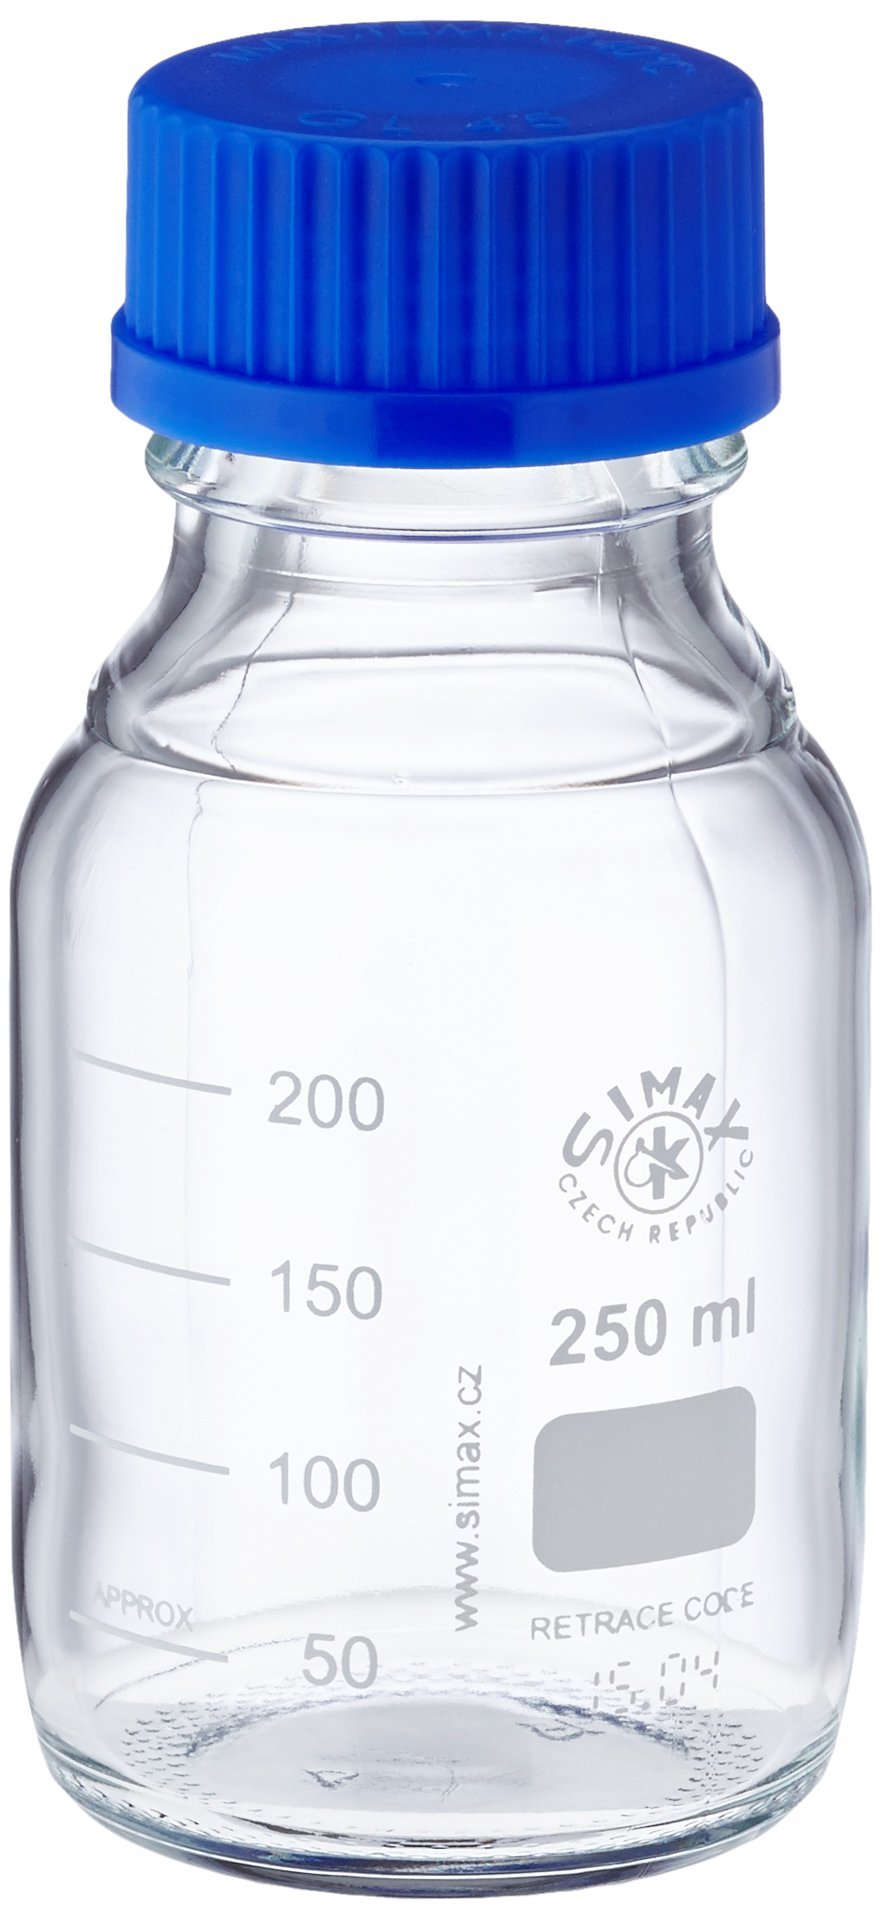 neoLab E-1430 Laborflaschen, GL 45, 250 mL, Iso-Gewinde, Kappe + Ausgießring (10-er Pack), Borosilikatglas, autoklavierbar, Schraubverschlusskappe aus PPN, Ausgießring